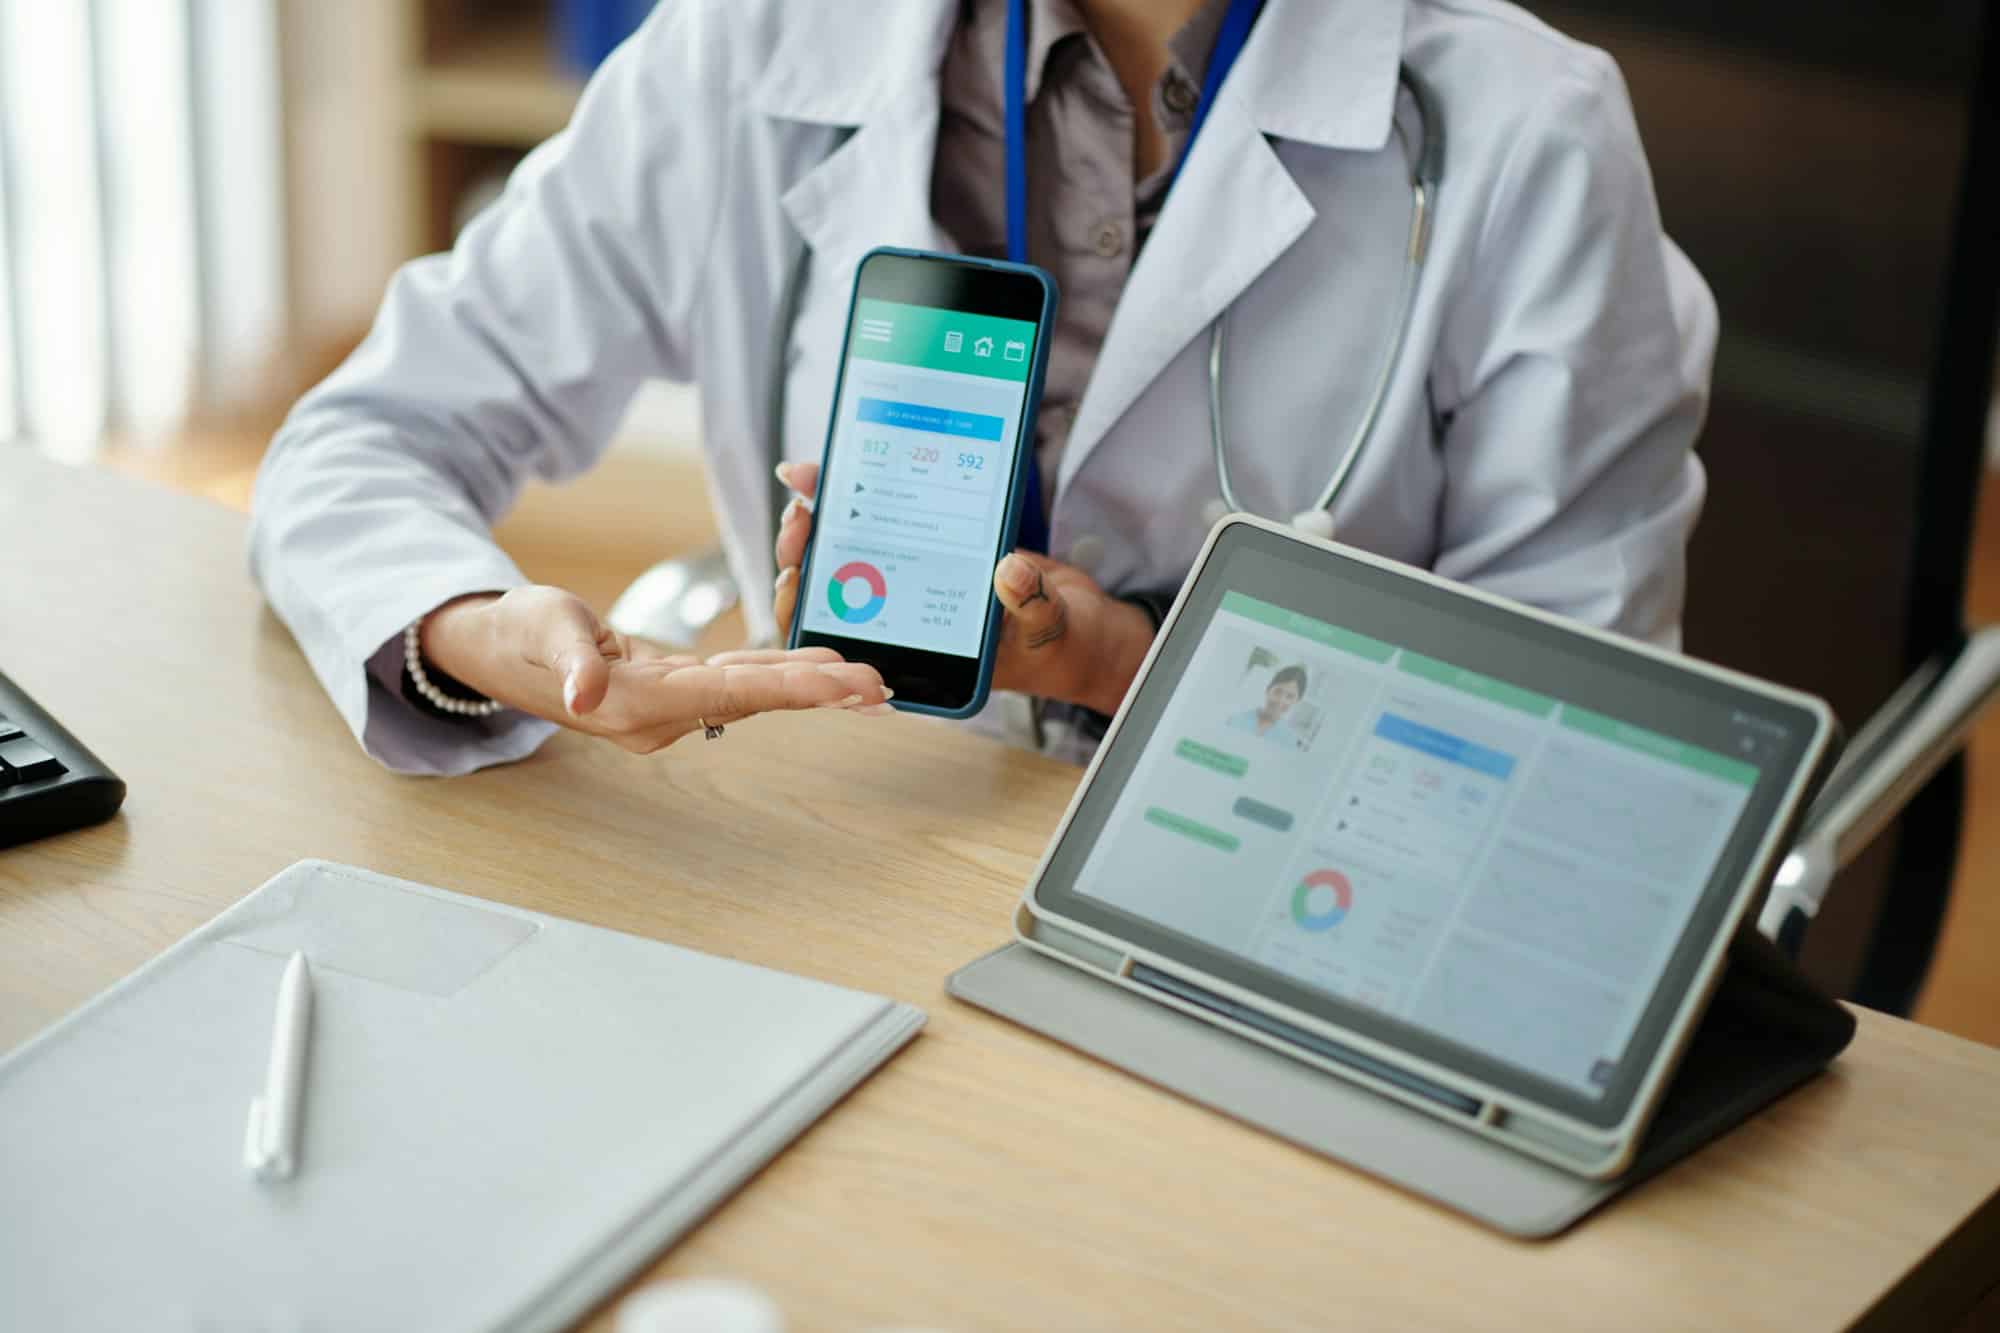 Comment utiliser les nouvelles technologies et outils numériques pour améliorer sa pratique infirmière.